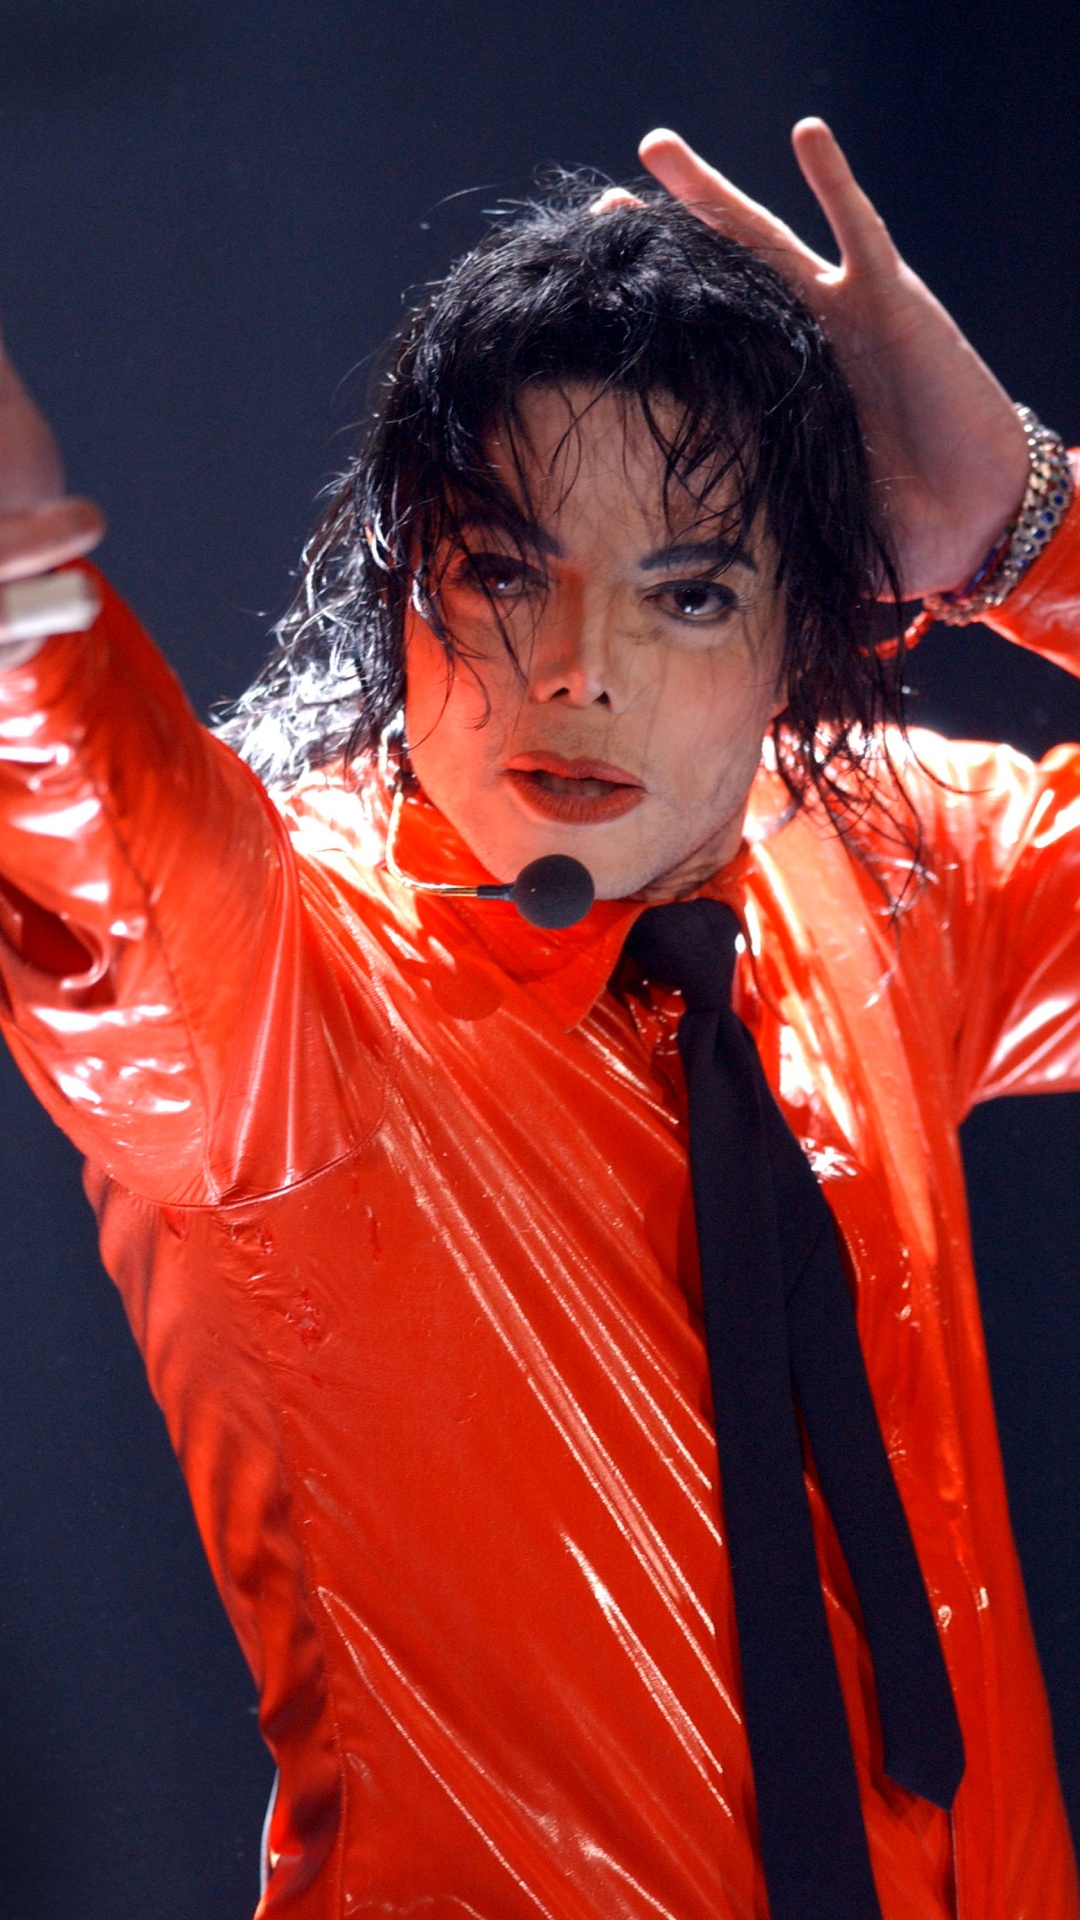 Michael Jackson, Leistung, Darstellende Kunst, Sänger, Stirn. Wallpaper in 1080x1920 Resolution